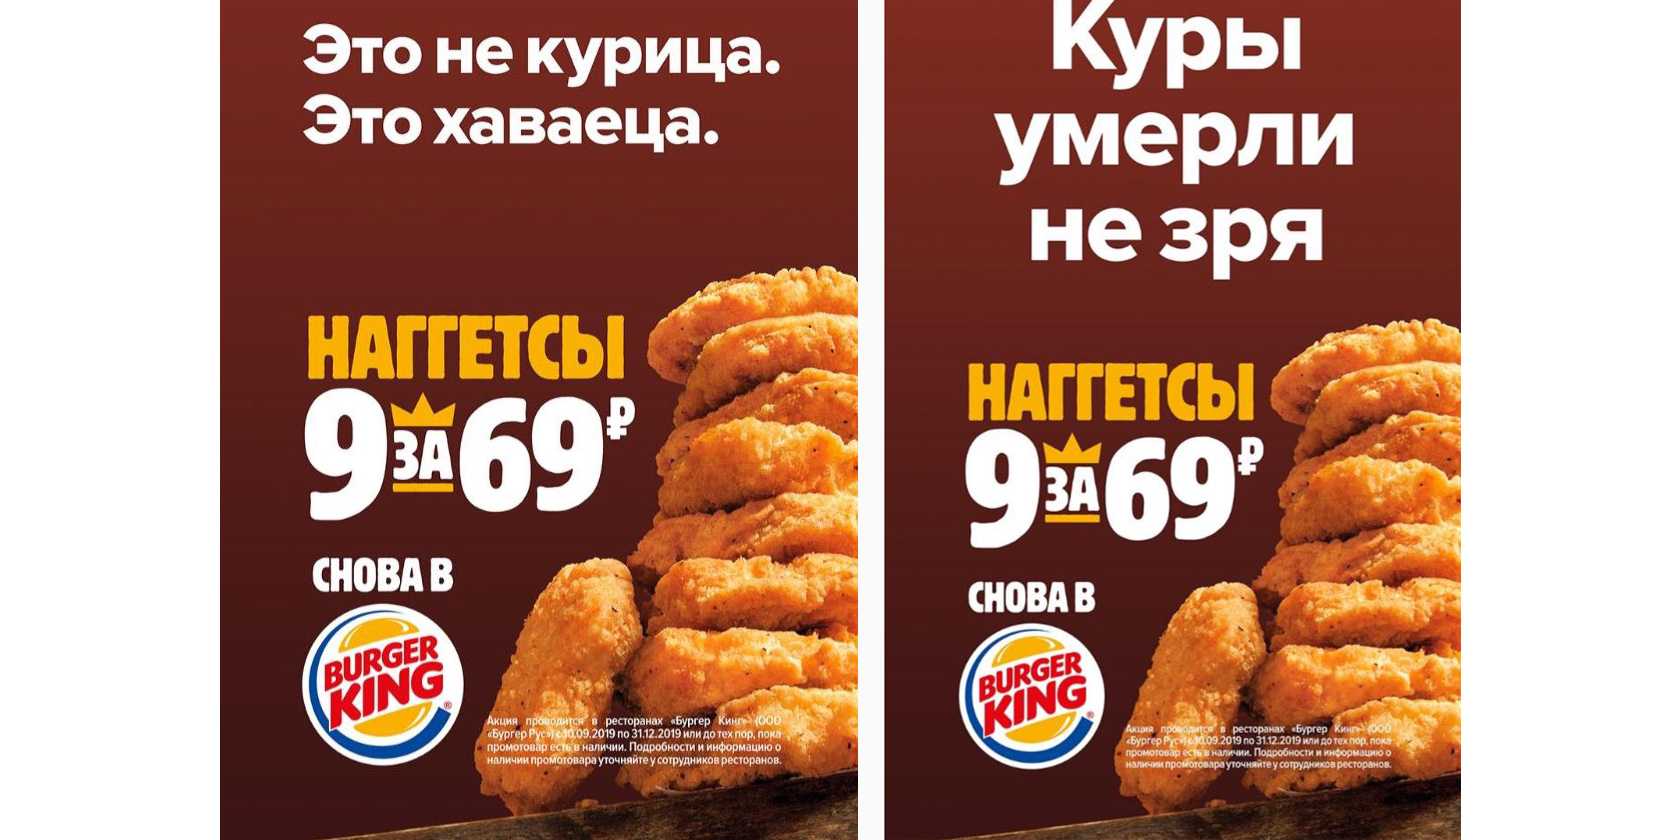 Примеры самой глупой и провокационной российской рекламы Когда реклама превращается в антирекламу - фотоподборка самой глупой и смешной отечественной рекламы